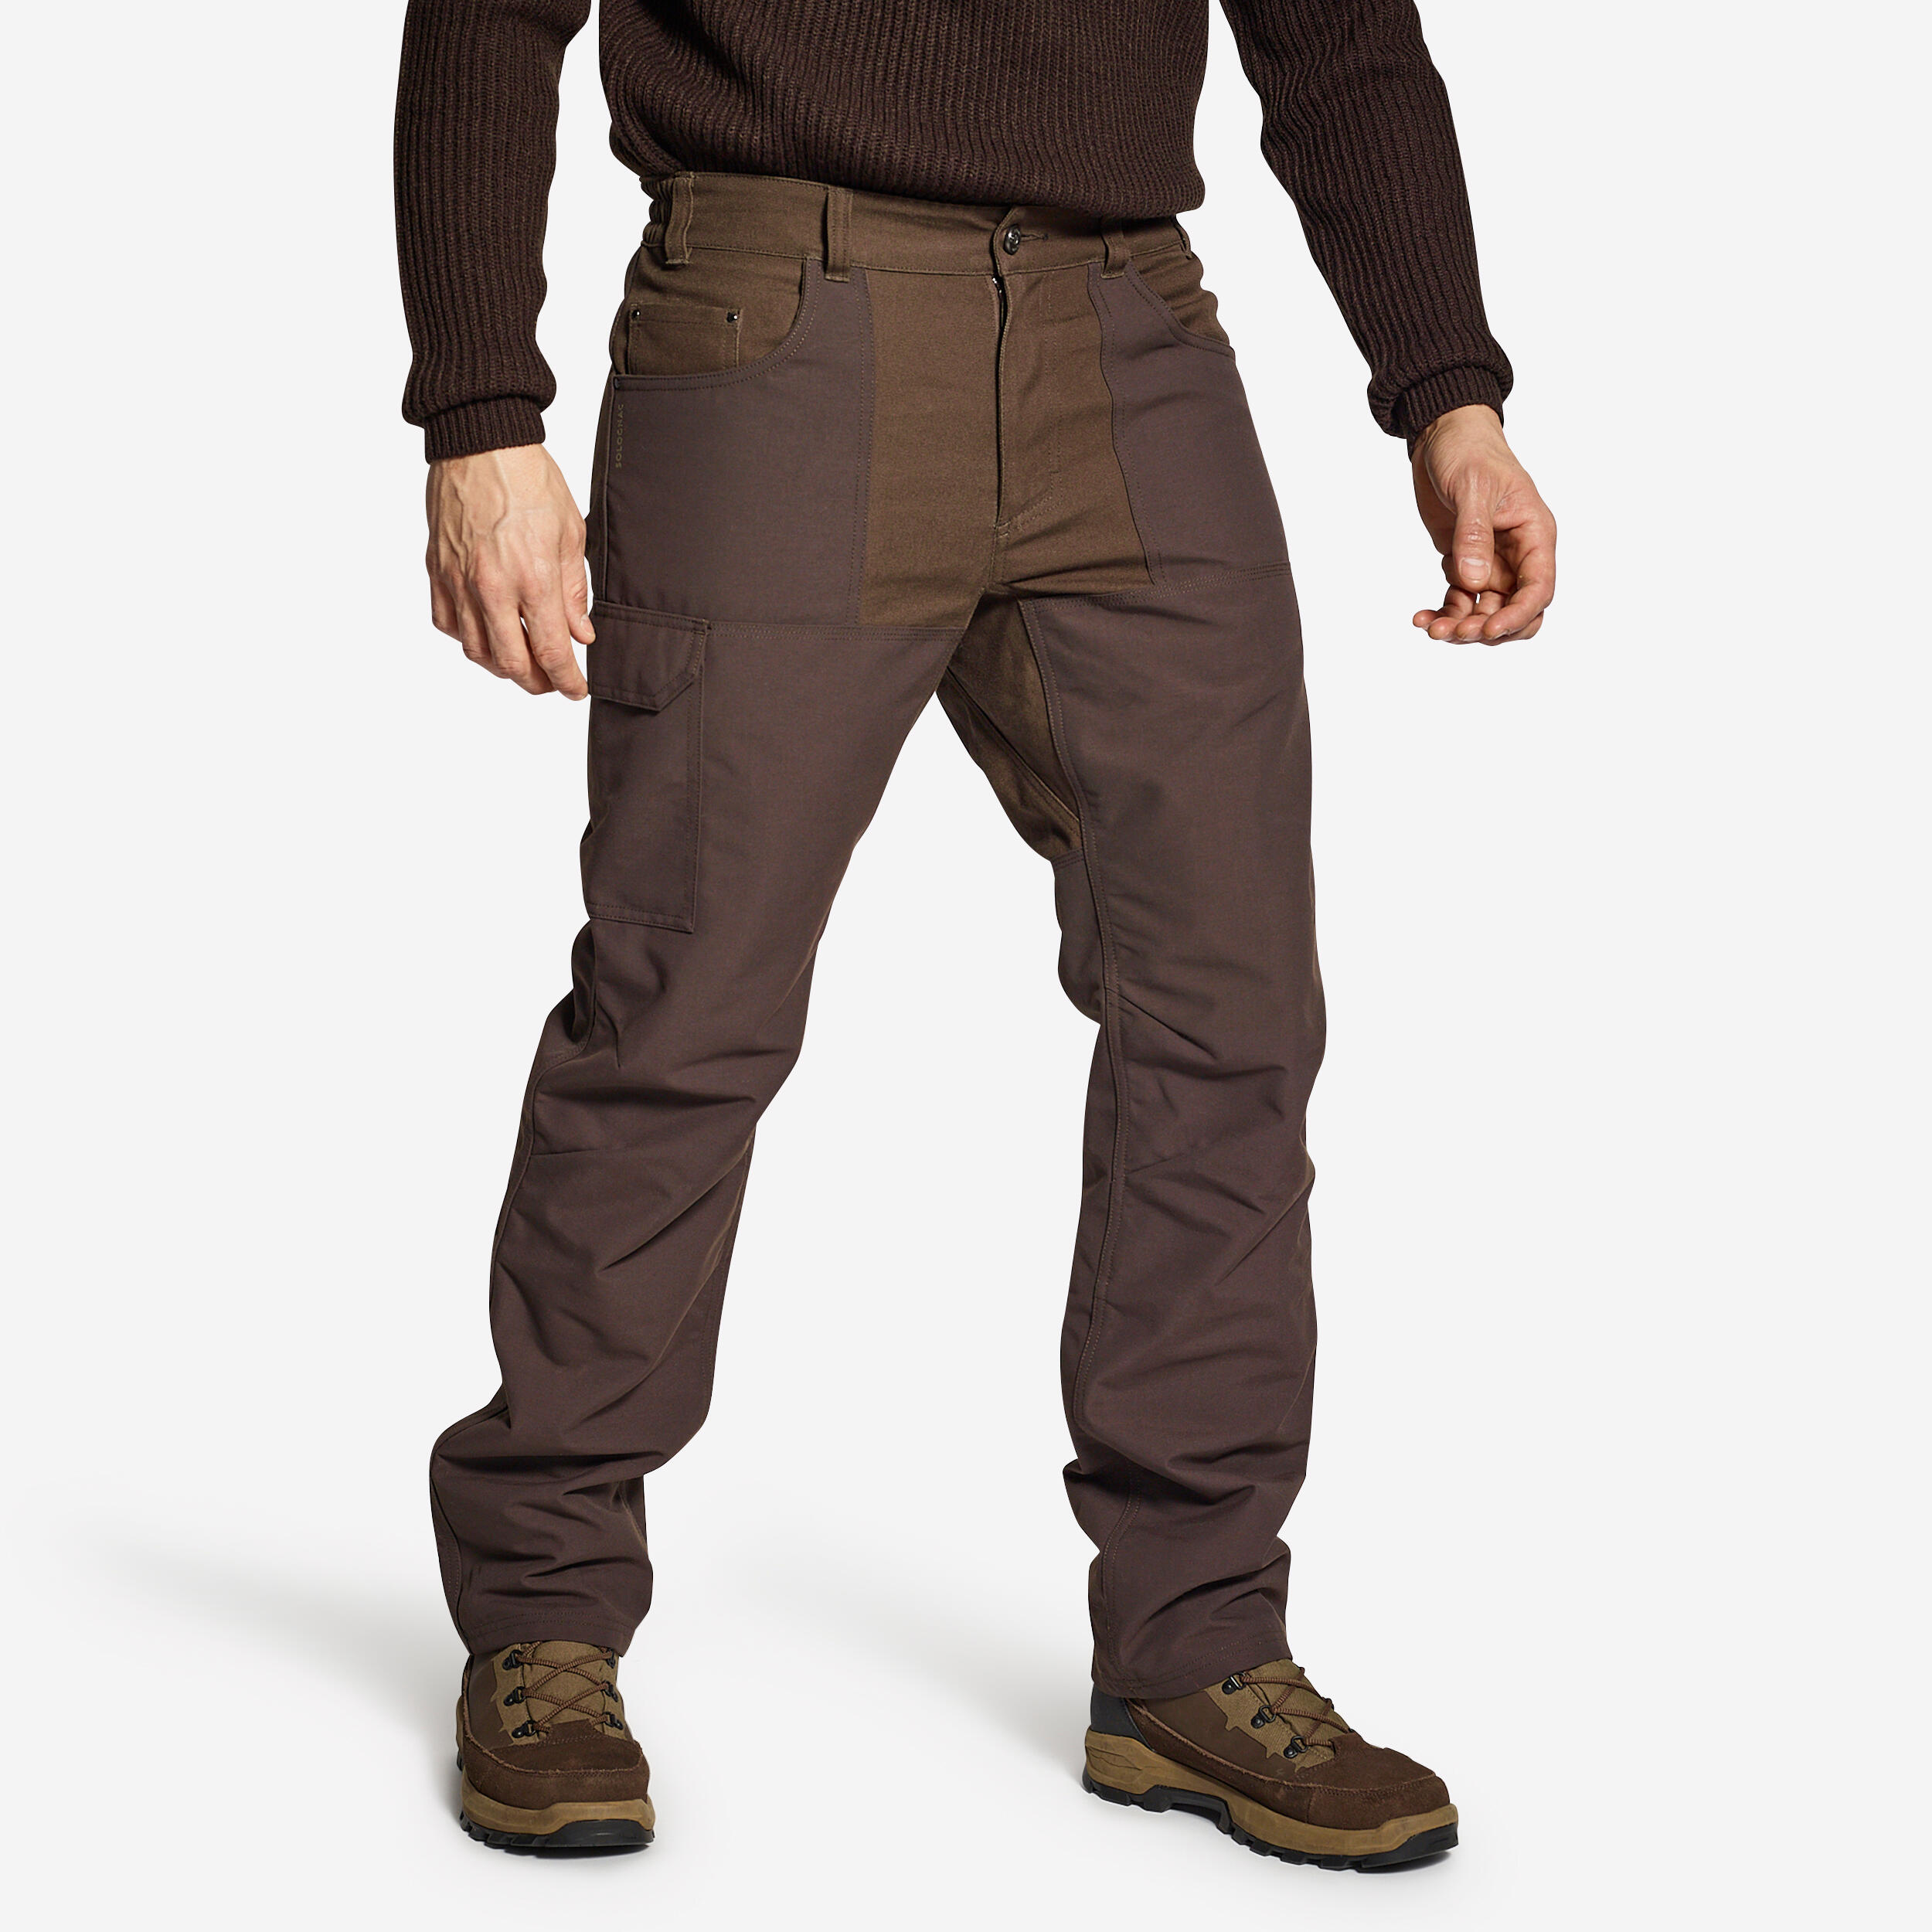 Decathlon Men's Cargo Pant, Men's Breathable Trousers Pants SG-500 Khaki